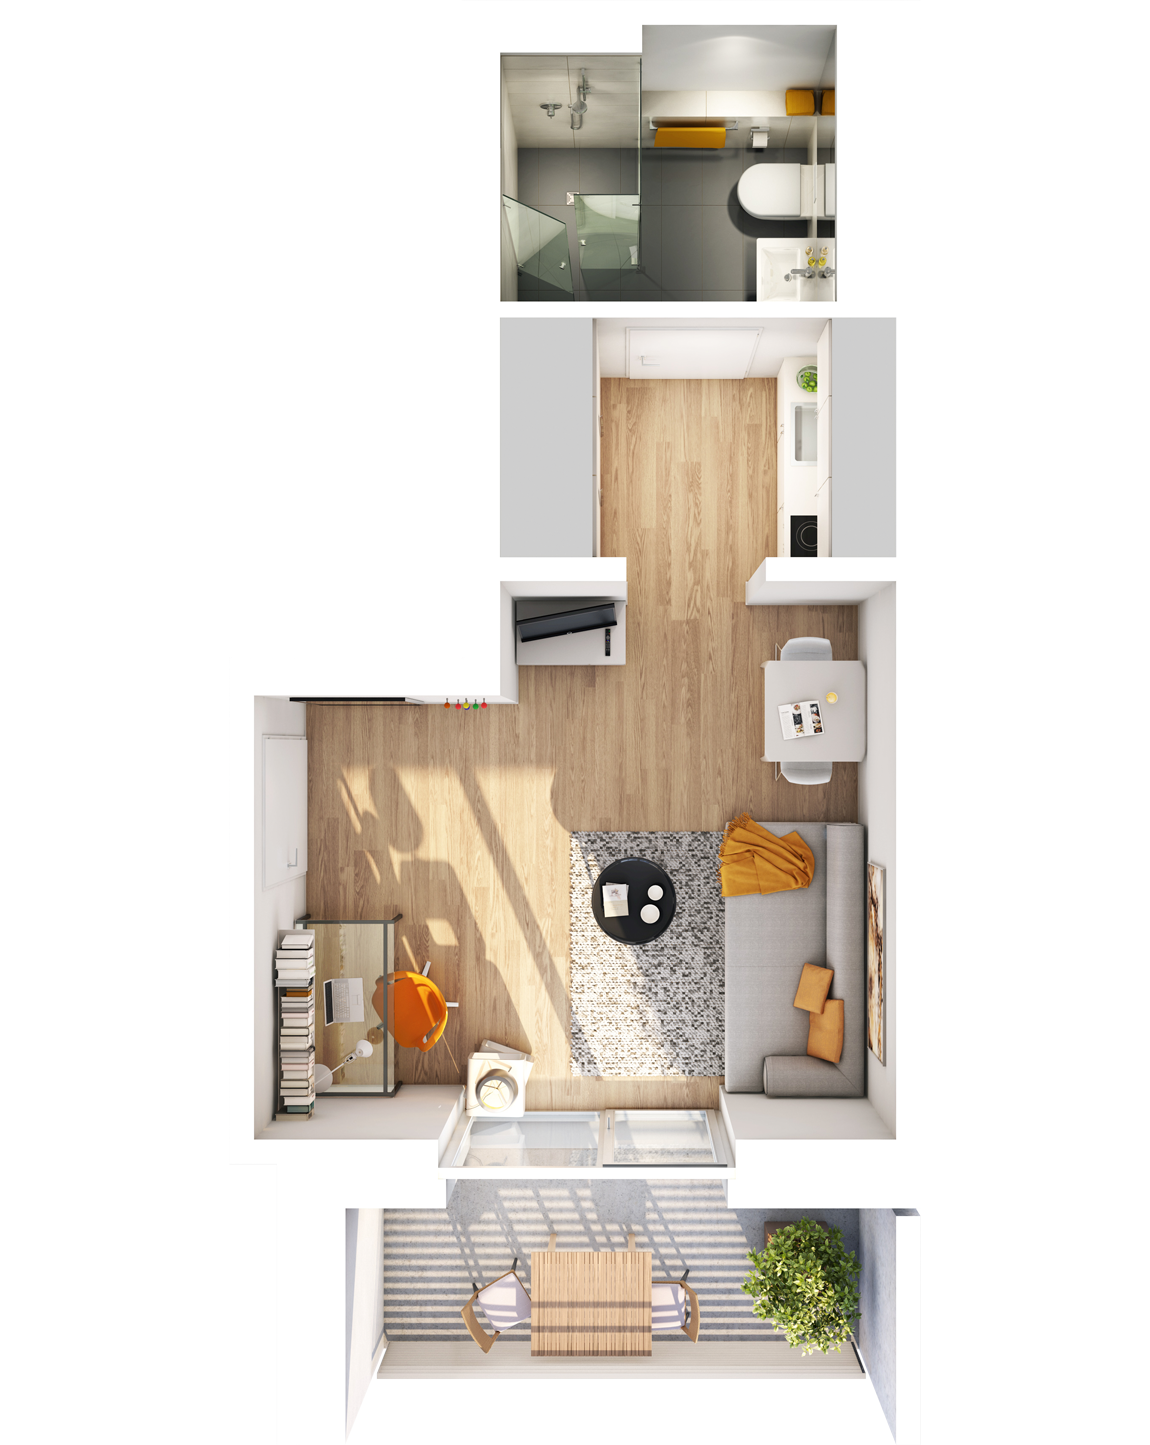 Visualisierung Beispiel 1-Zimmer-Wohnung Typ C mit Bad, separater Küche, großem Wohnbereich und Balkon im studiosus 5 Apartmenthaus in Augsburg